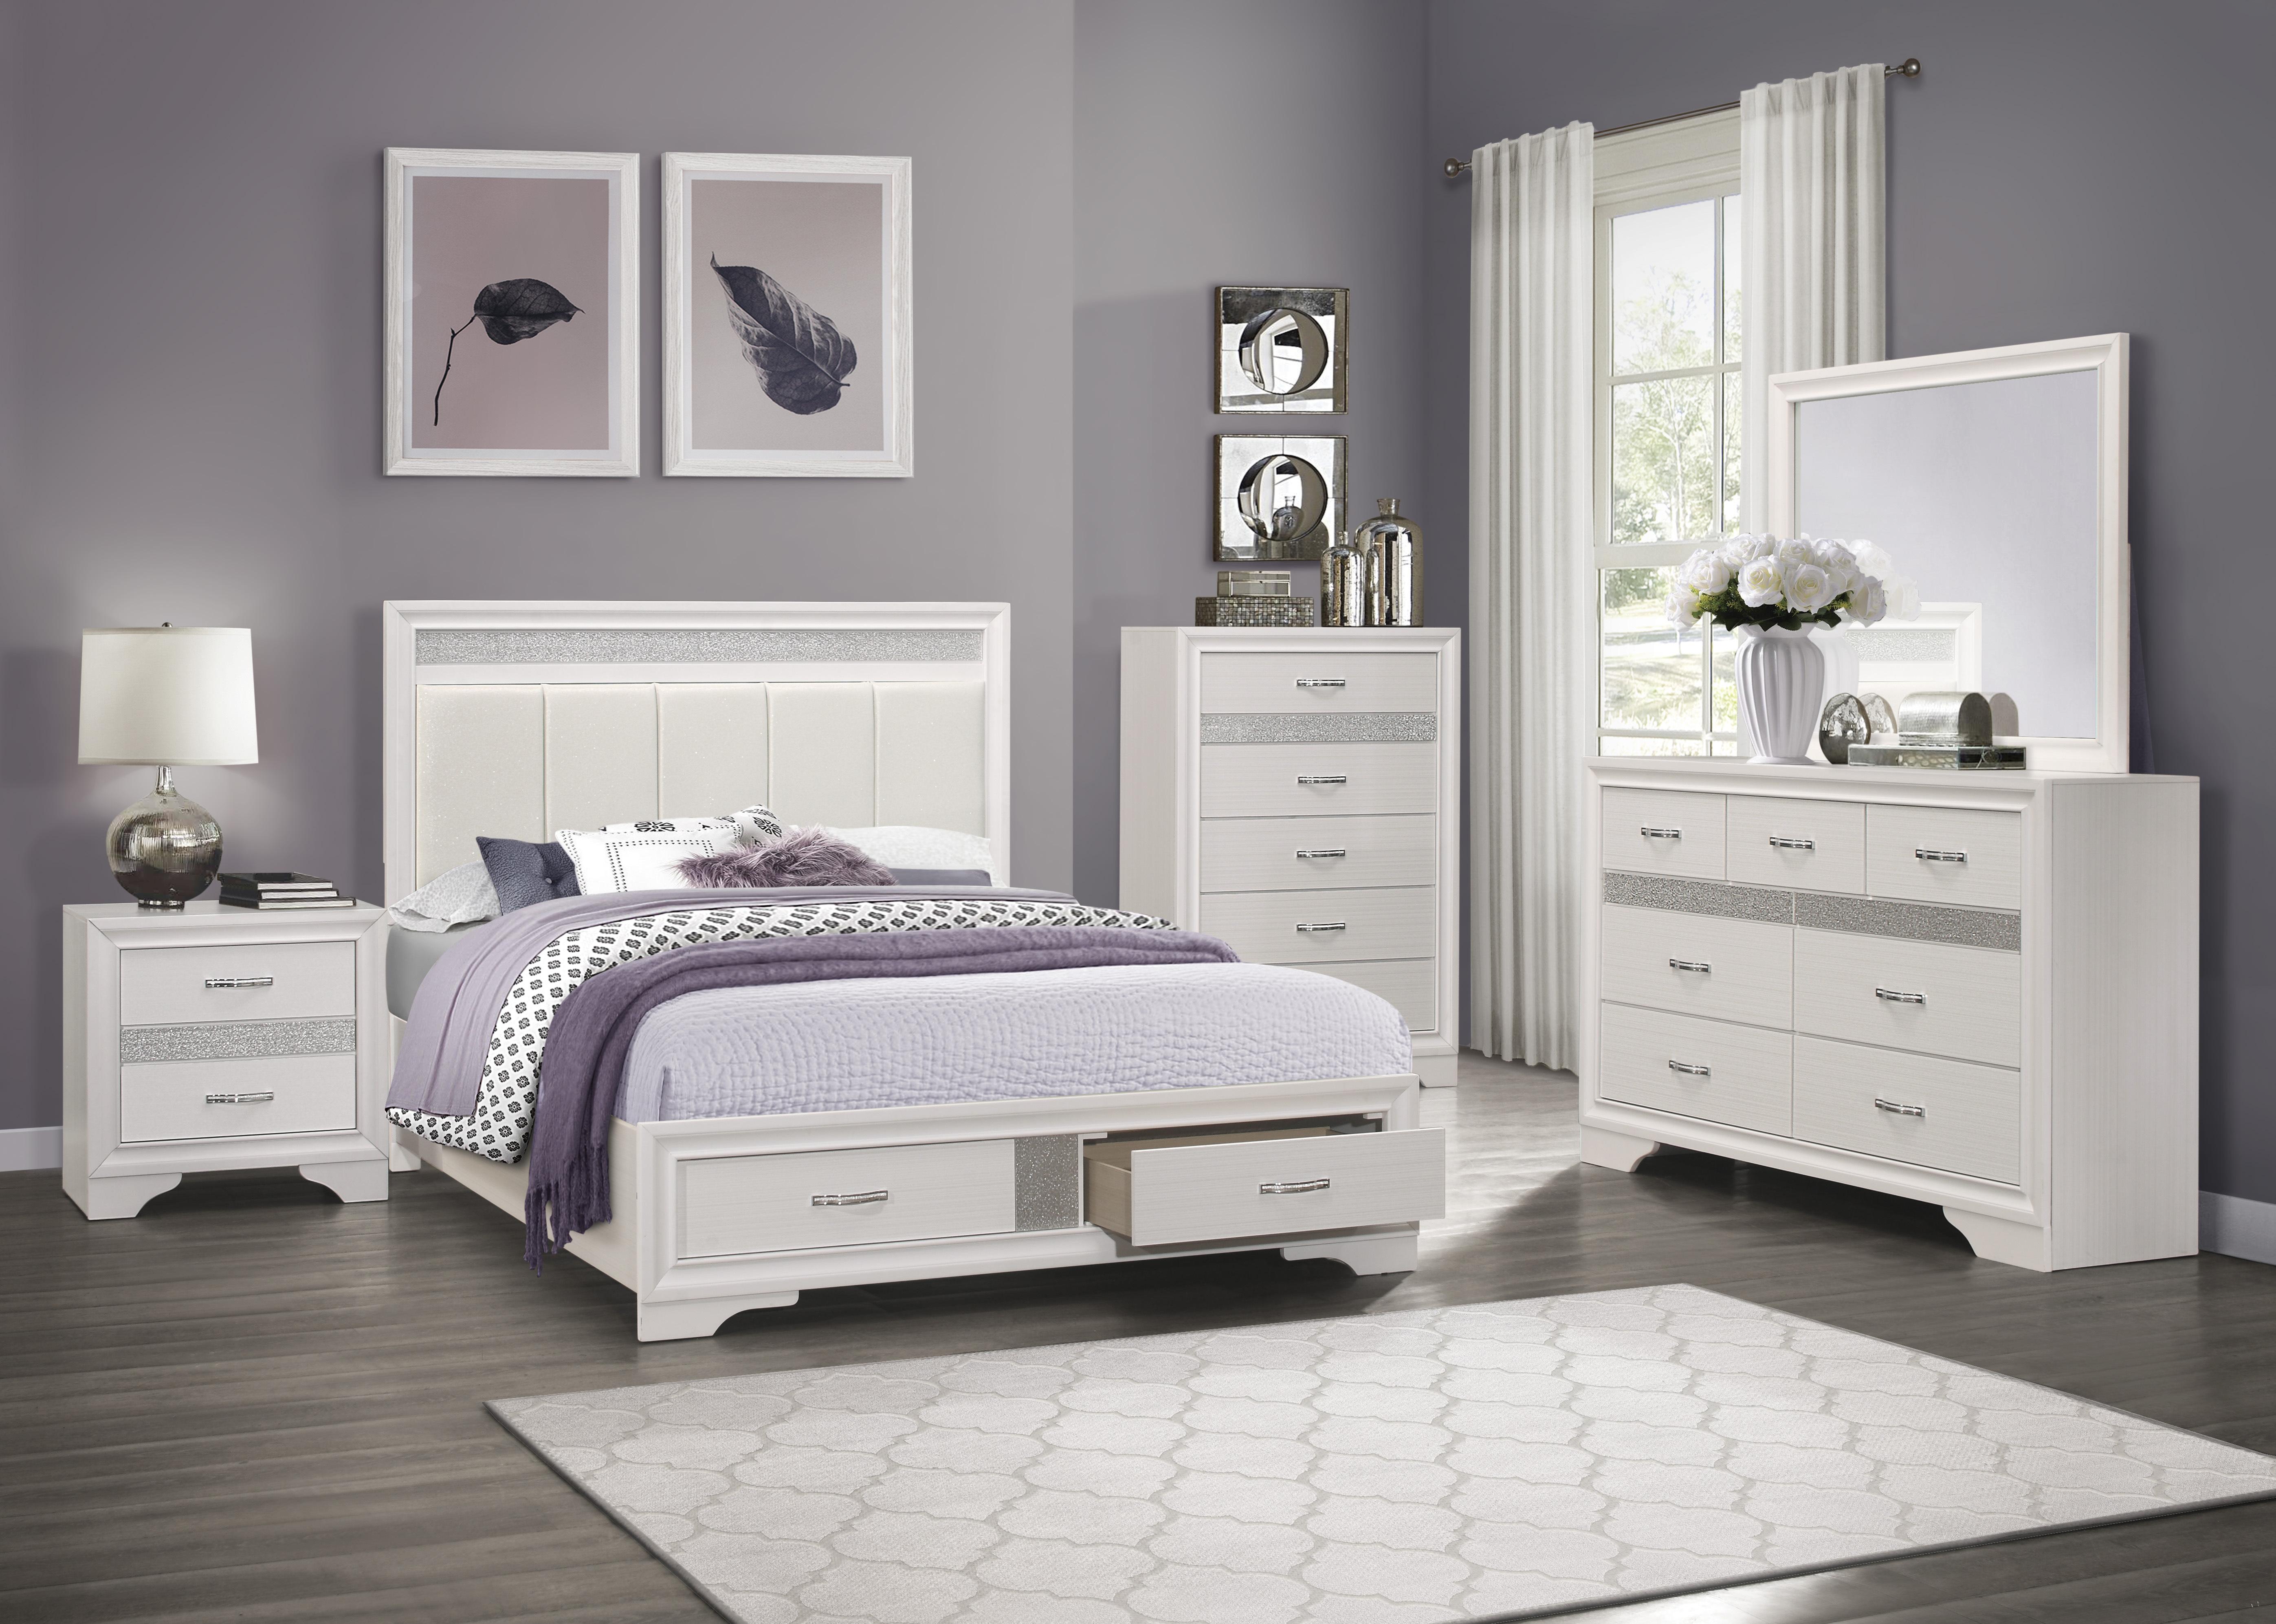 

    
Glam White & Silver Glitter Wood CAL Bedroom Set 6pcs Homelegance 1505WK-1CK* Luster
